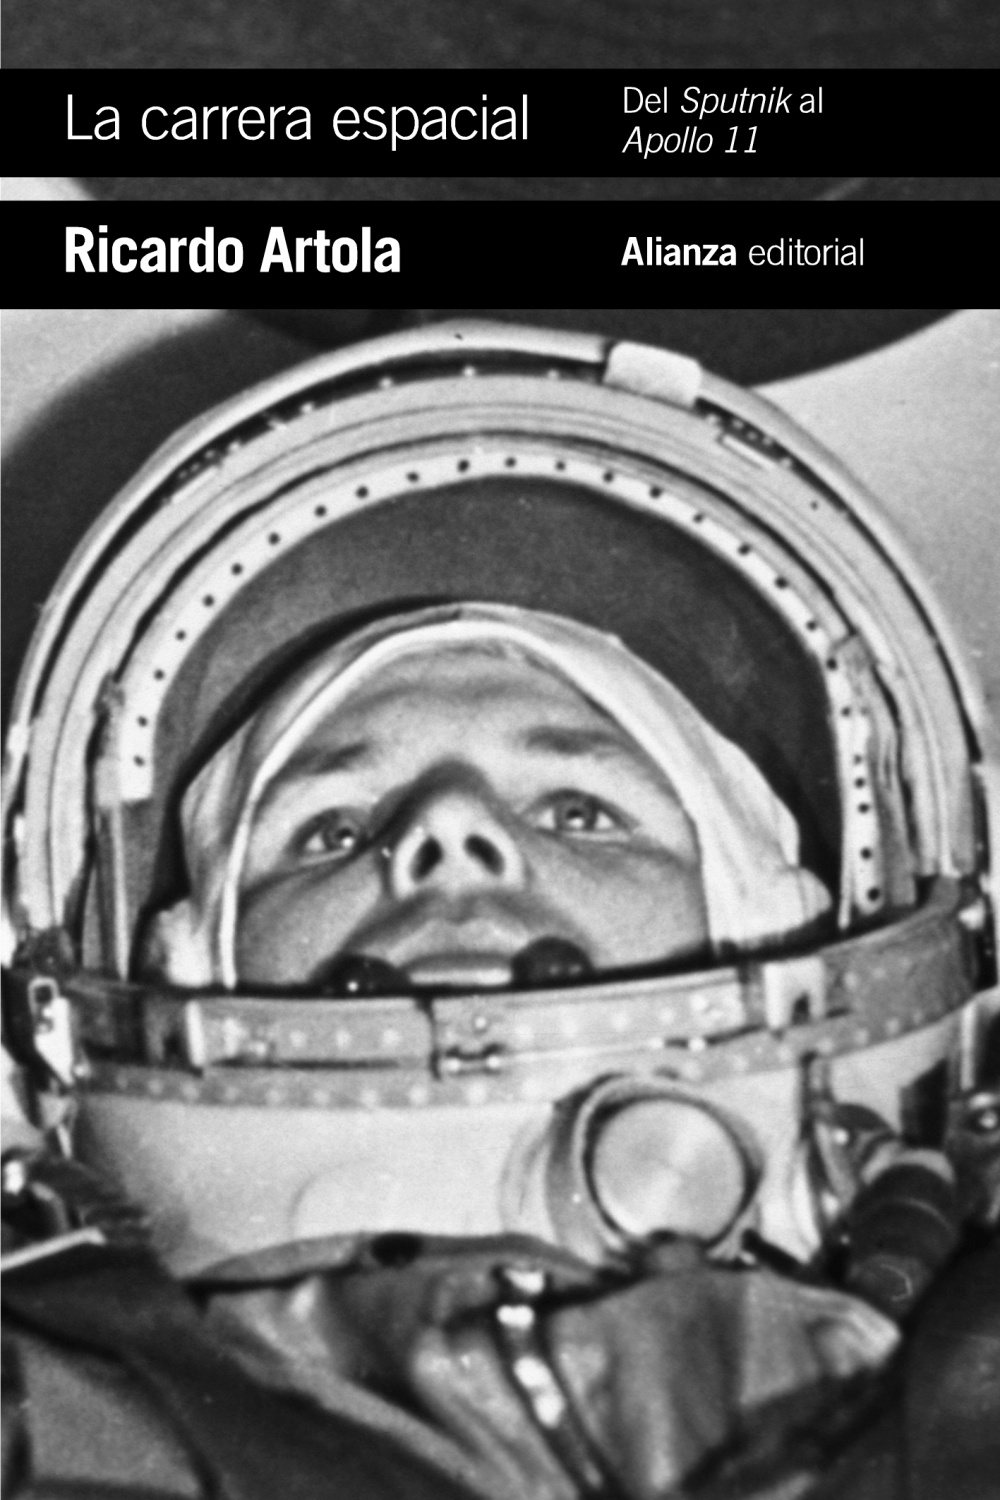 La carrera espacial: Del Sputnik al Apollo 11 - Alianza Editorial